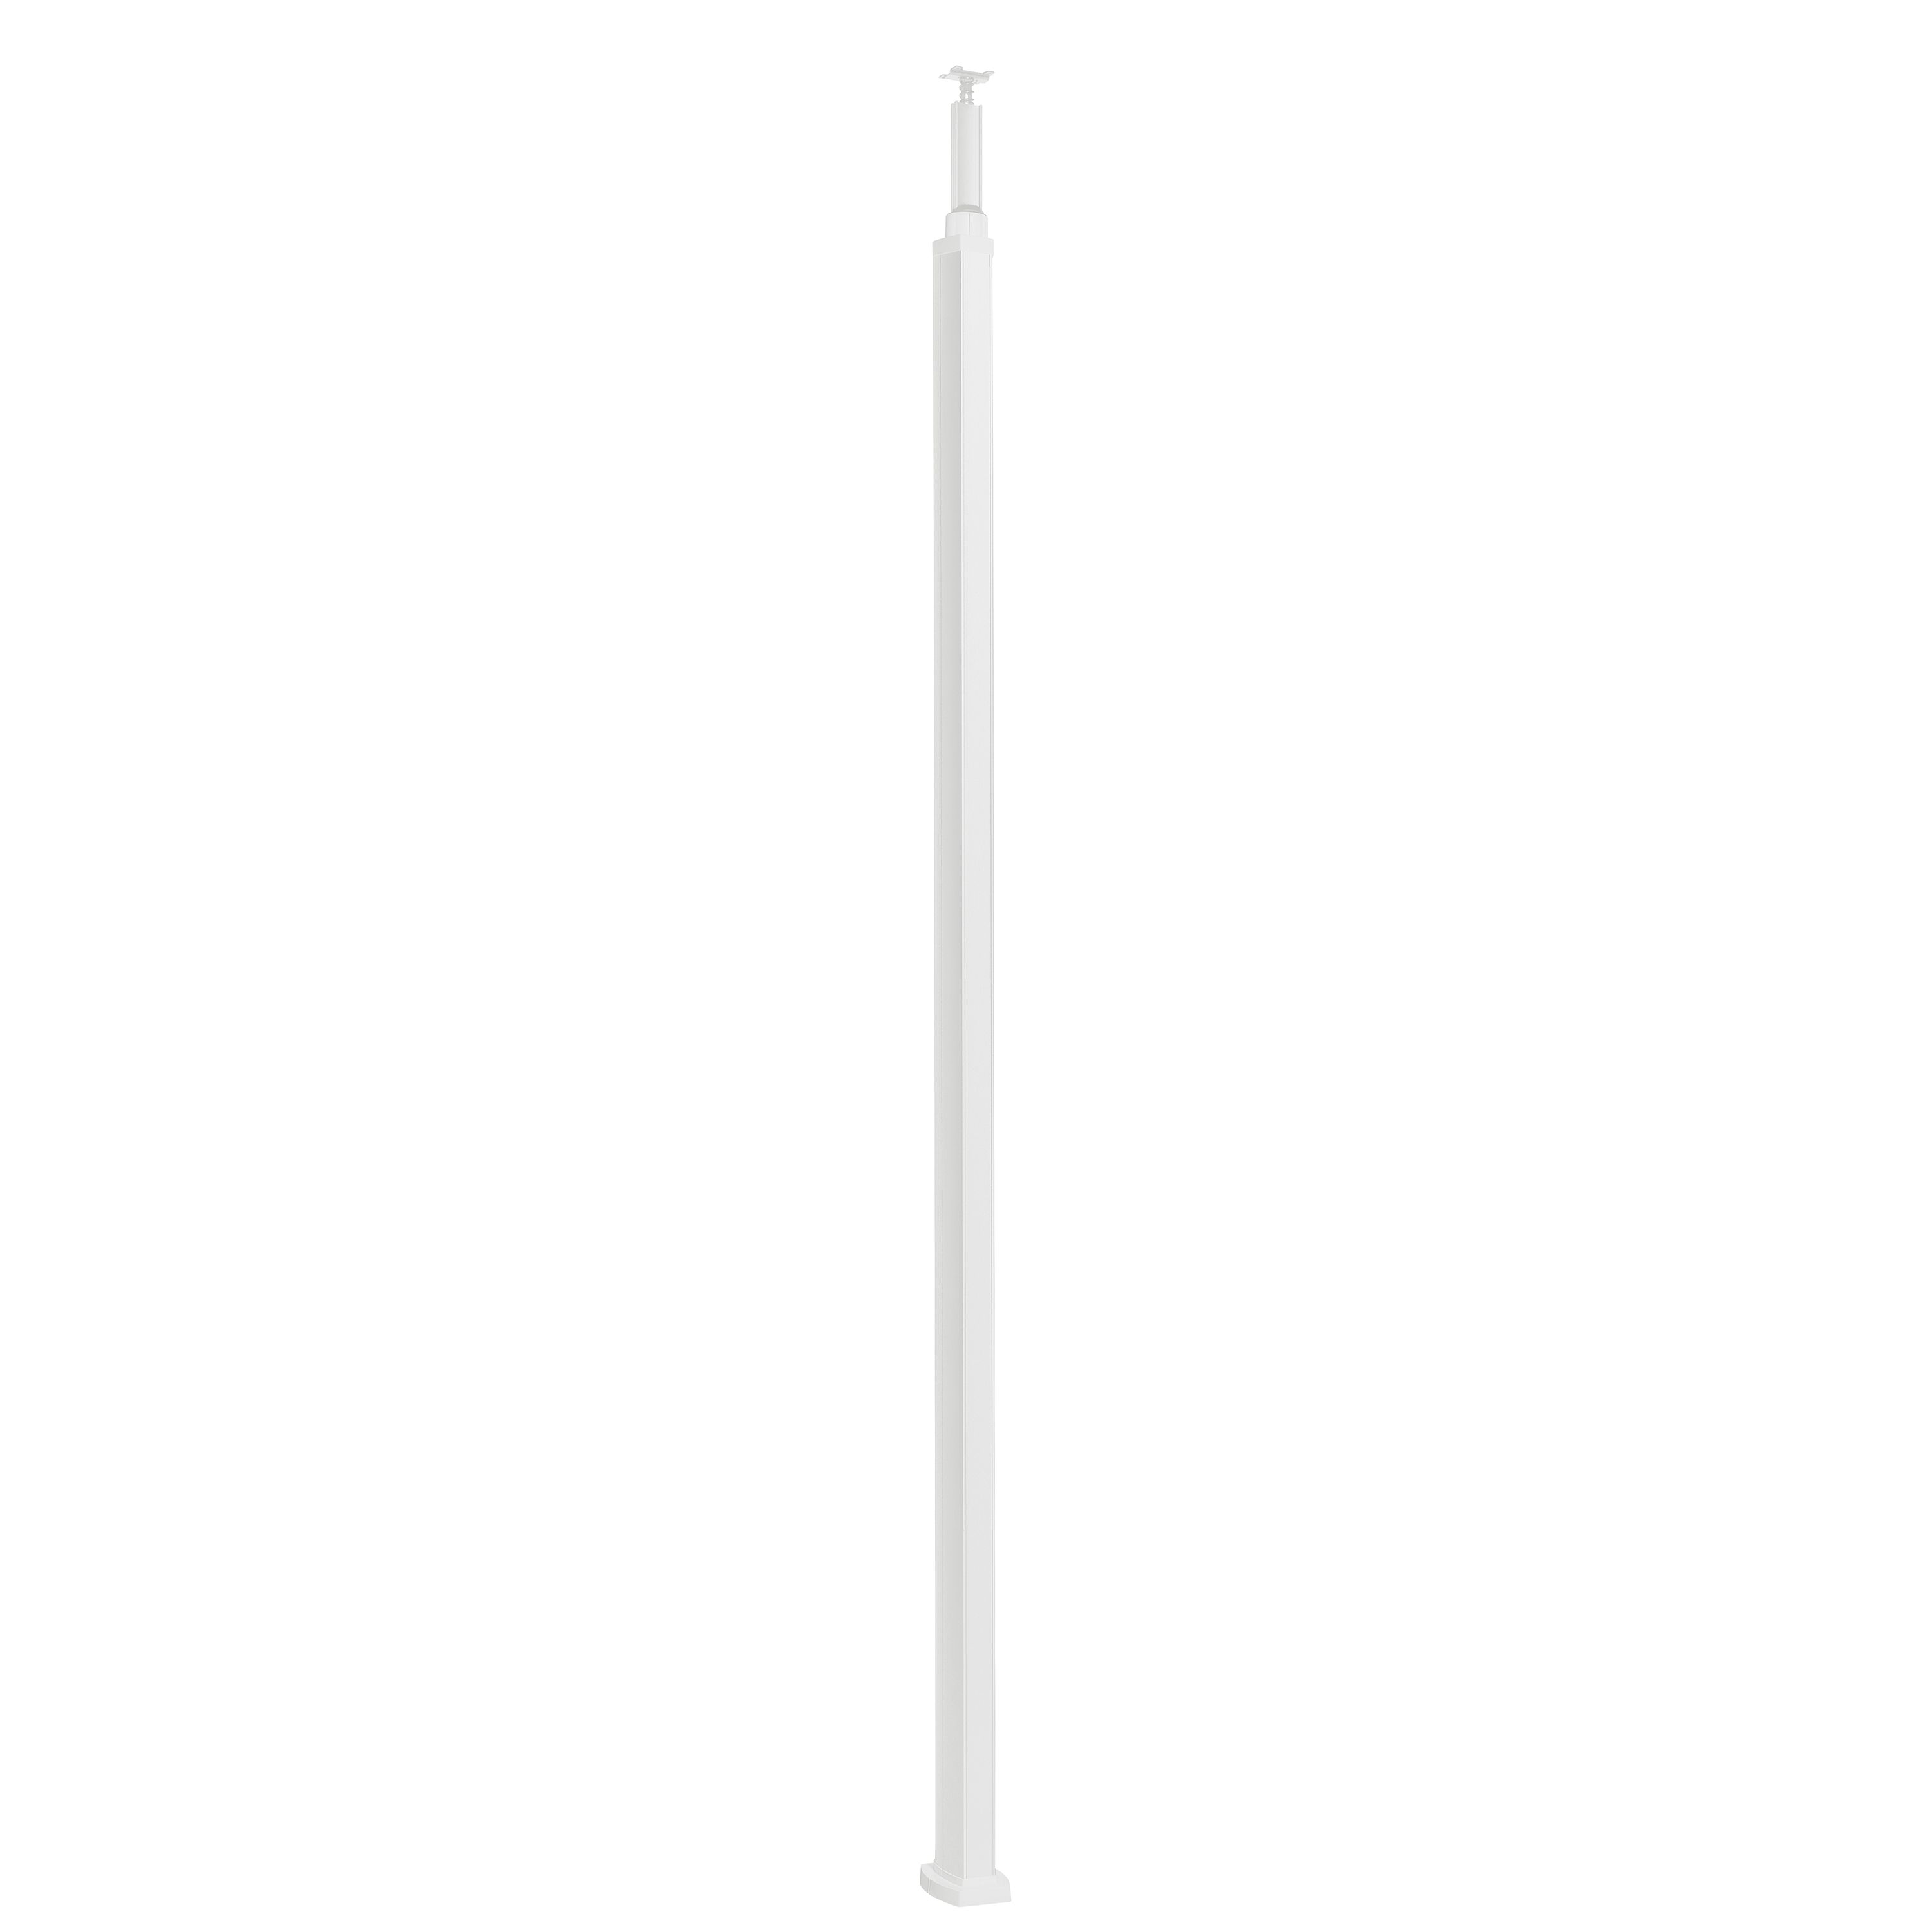 Snap-On колонна пластиковая с крышкой из пластика 2 секции 2,77 метра, с возможностью увеличения высоты колонны до 4,05 метра, цвет белый 653030 Legrand